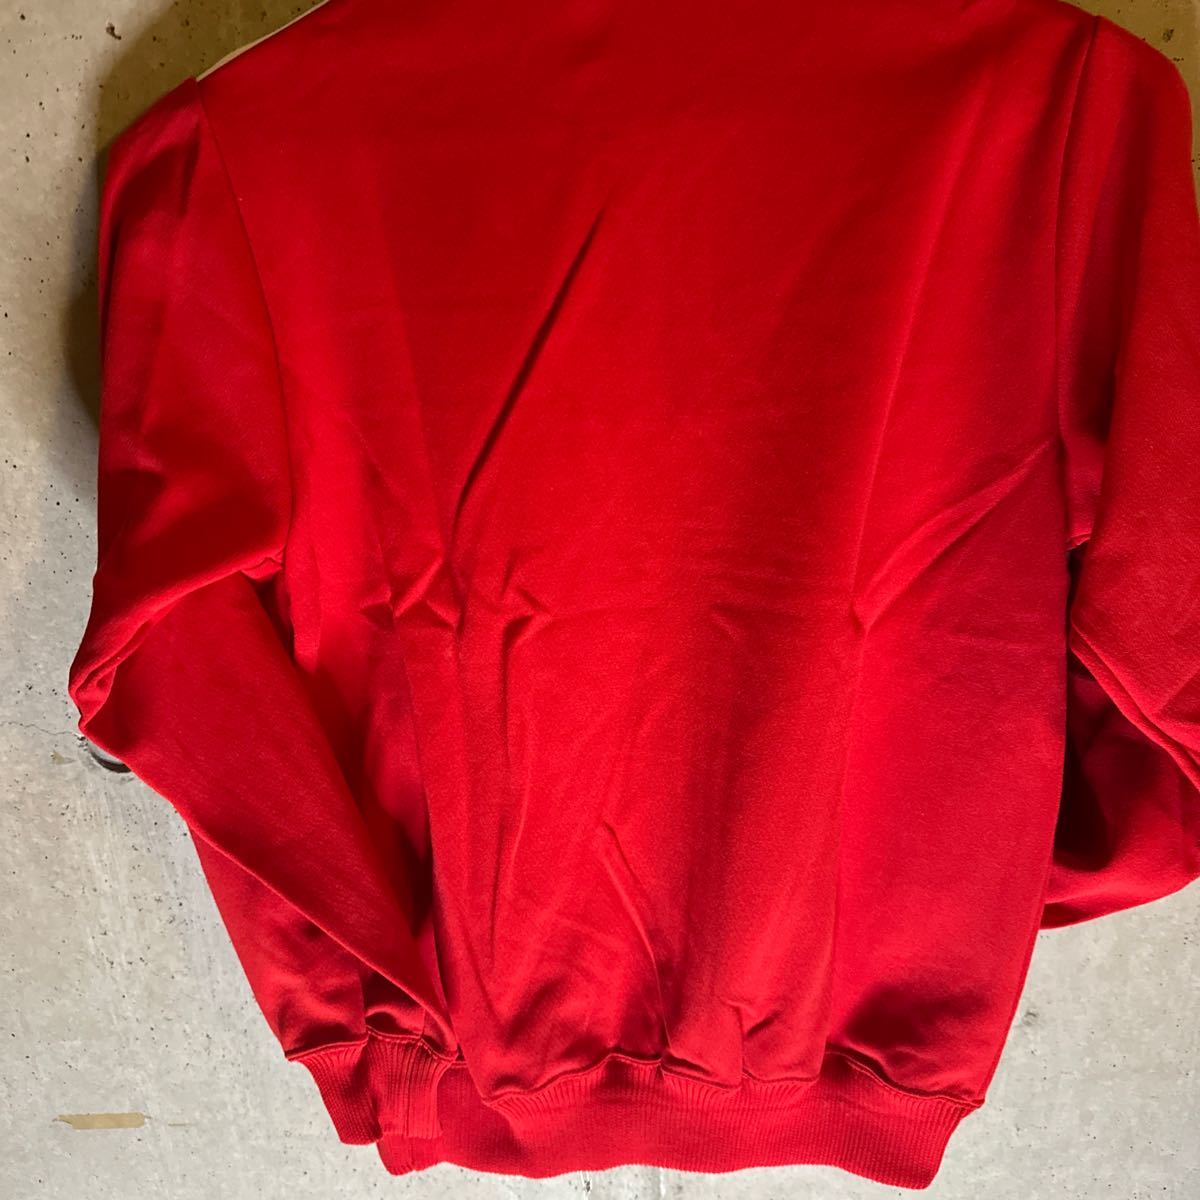  прекрасный Цу . производства джерси спортивная куртка super Star 70~80 годы неиспользуемый товар не использовался товар Showa Retro Vintage старый бирка сделано в Японии 